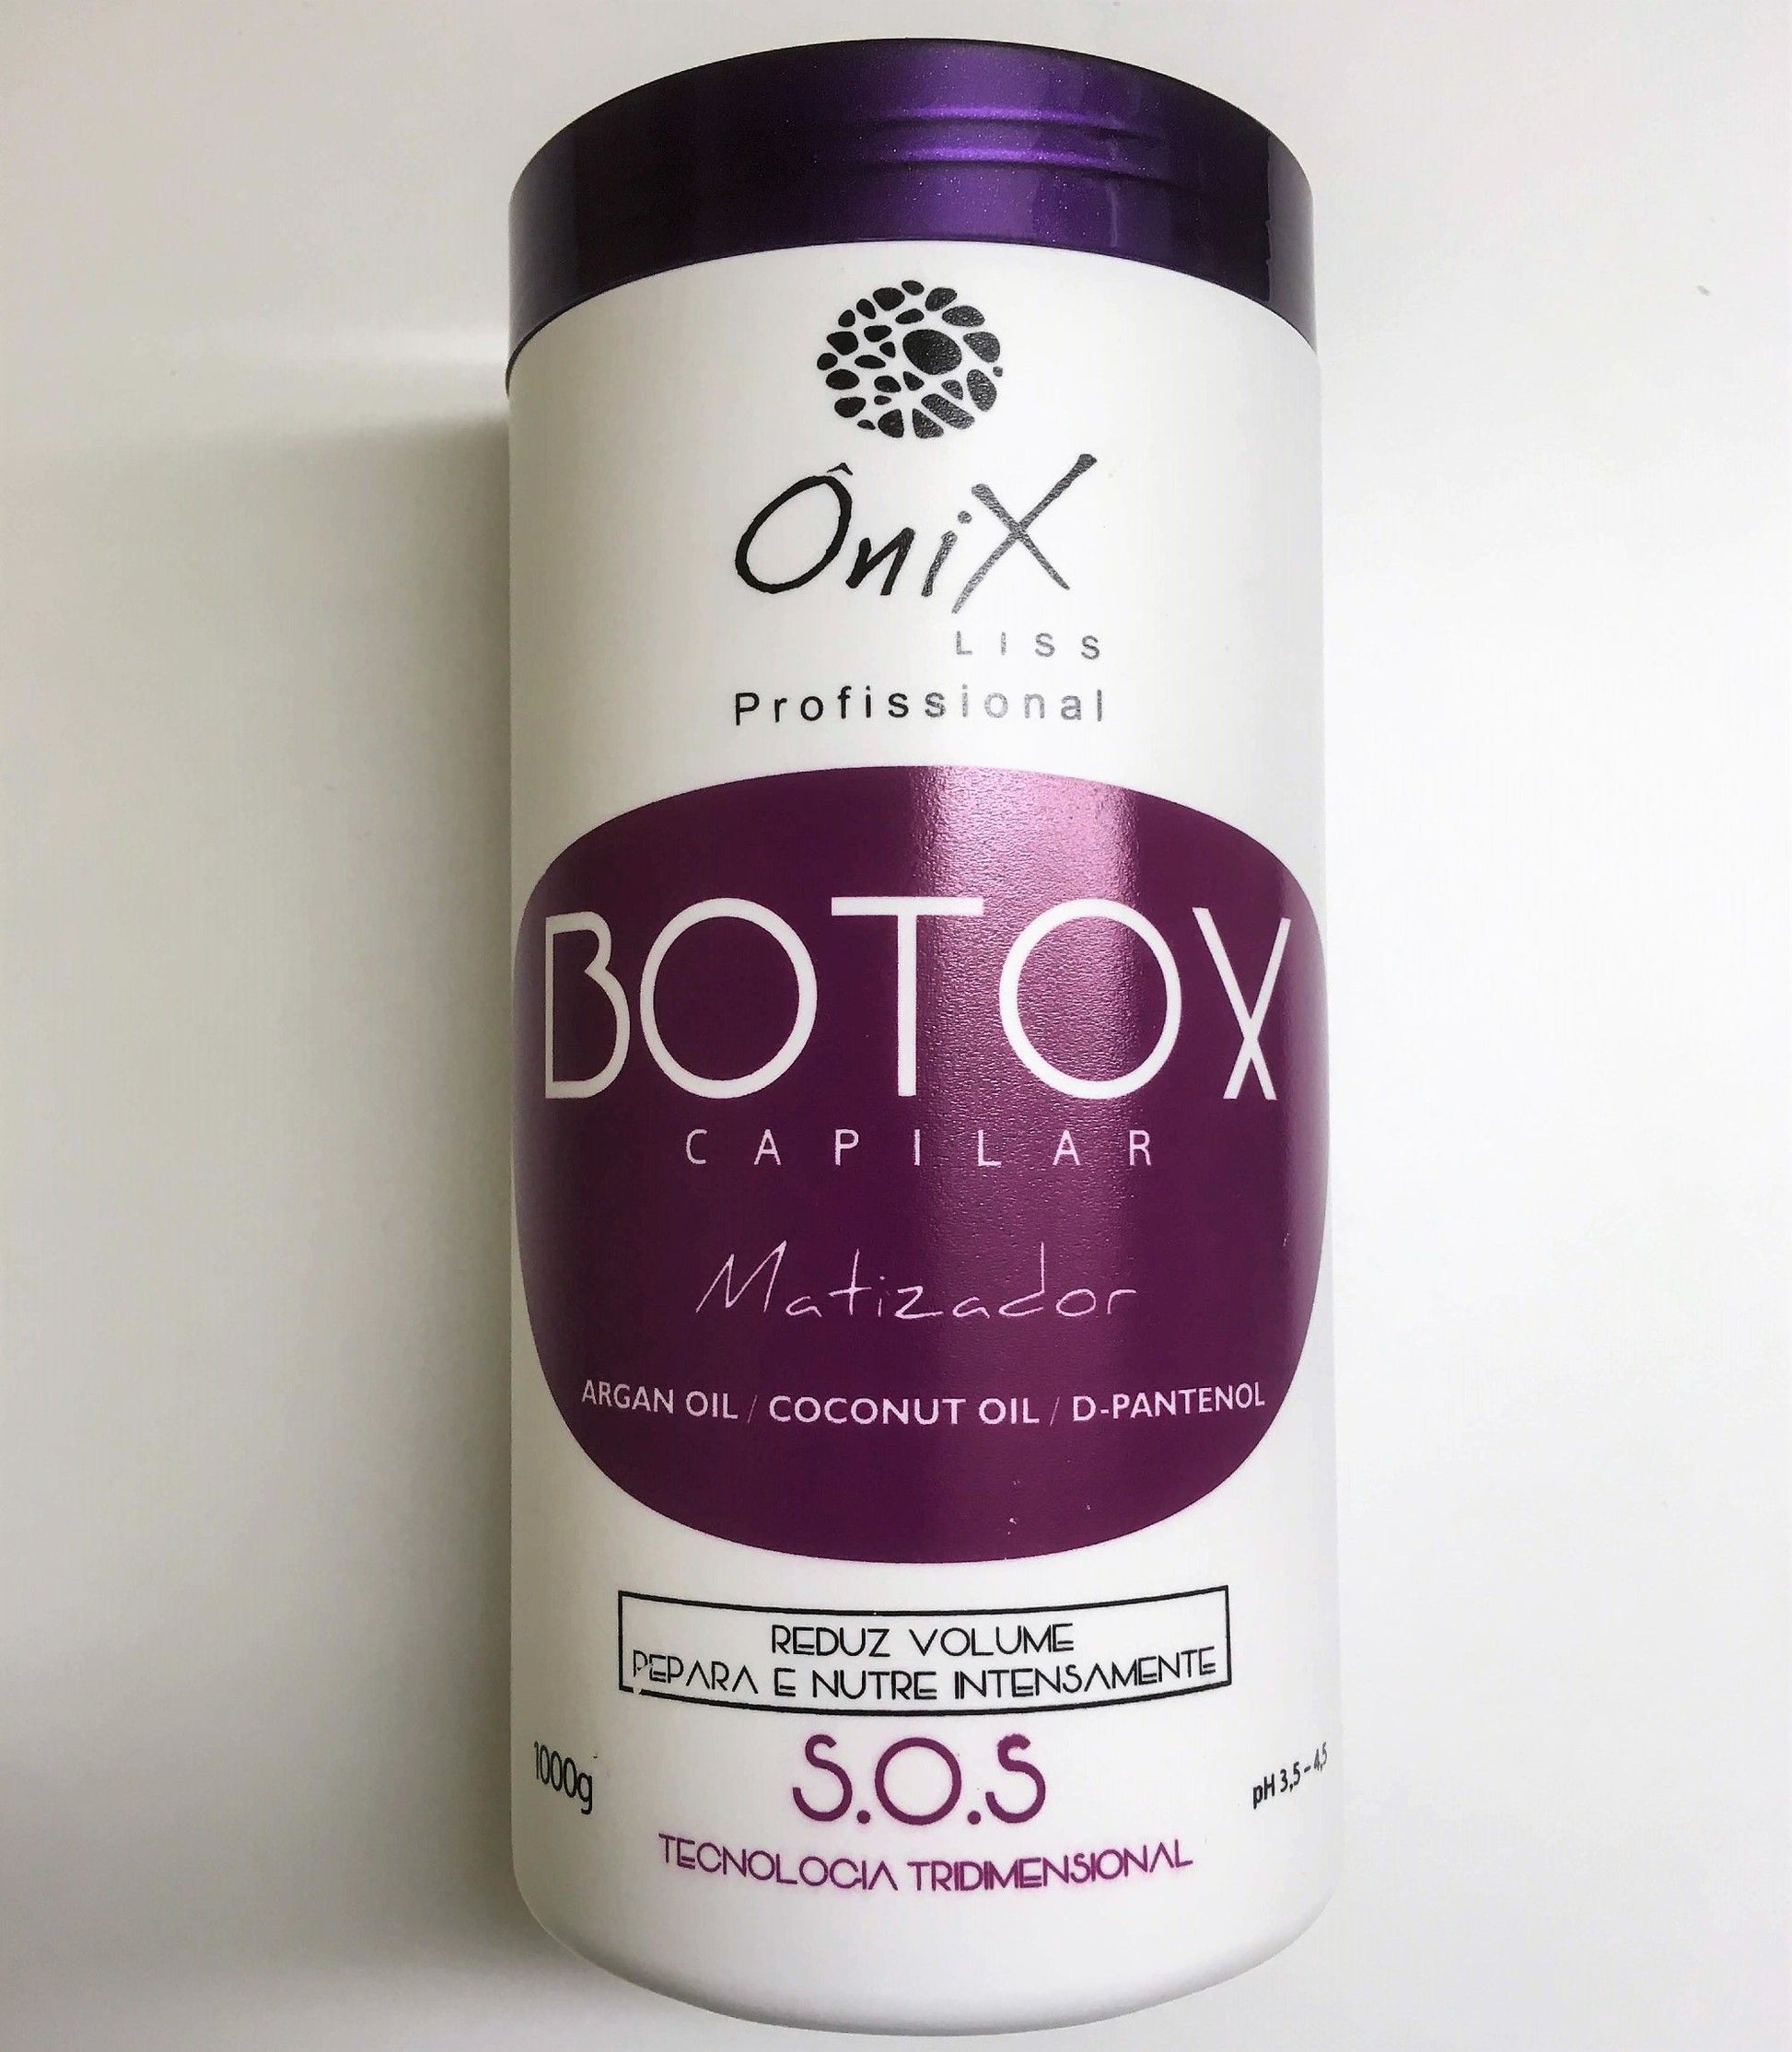 Botox Capillaire Onix Liss